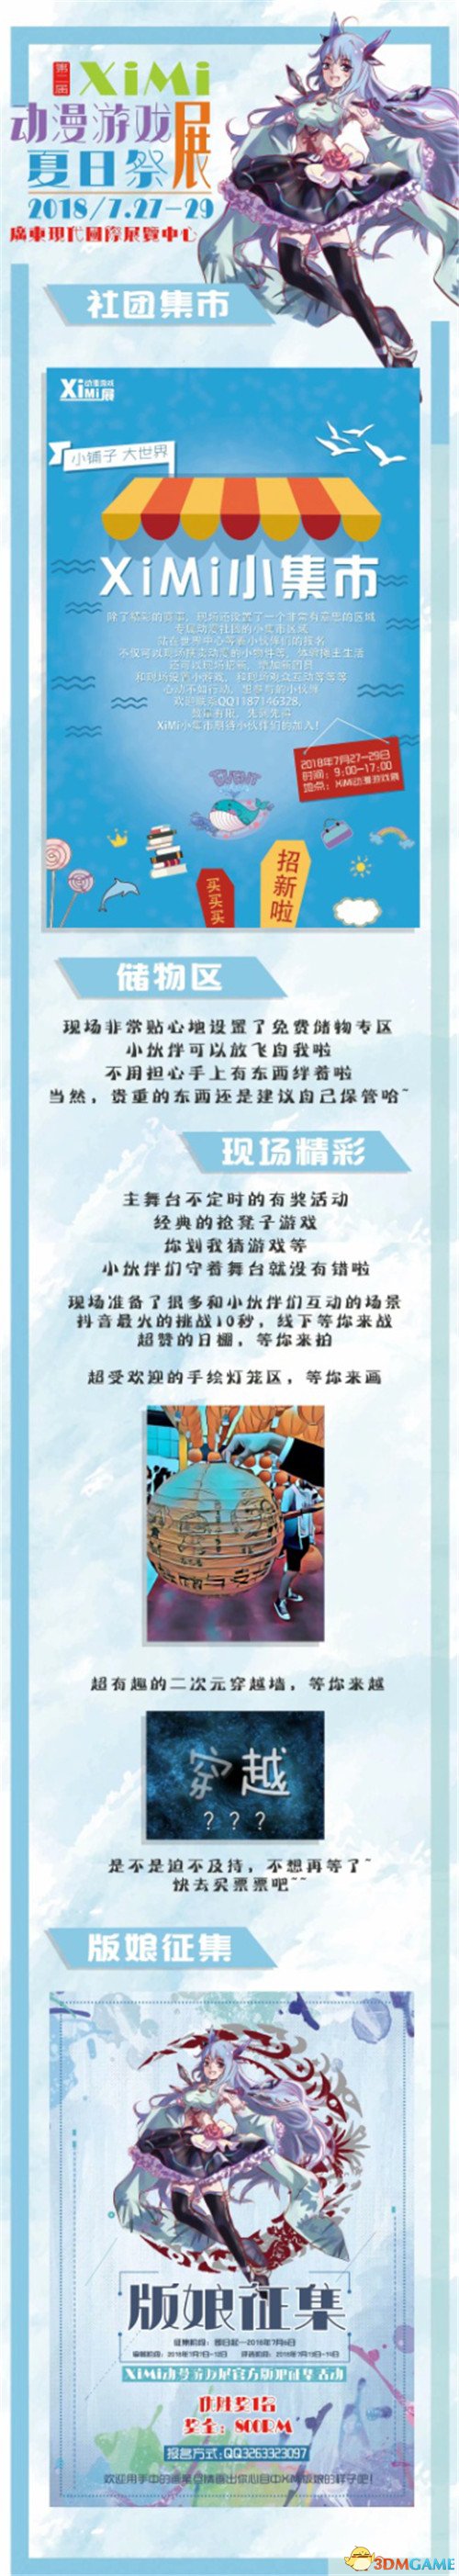 重慶海遊攜《推理學院》參展XiMi第二屆動漫遊戲展